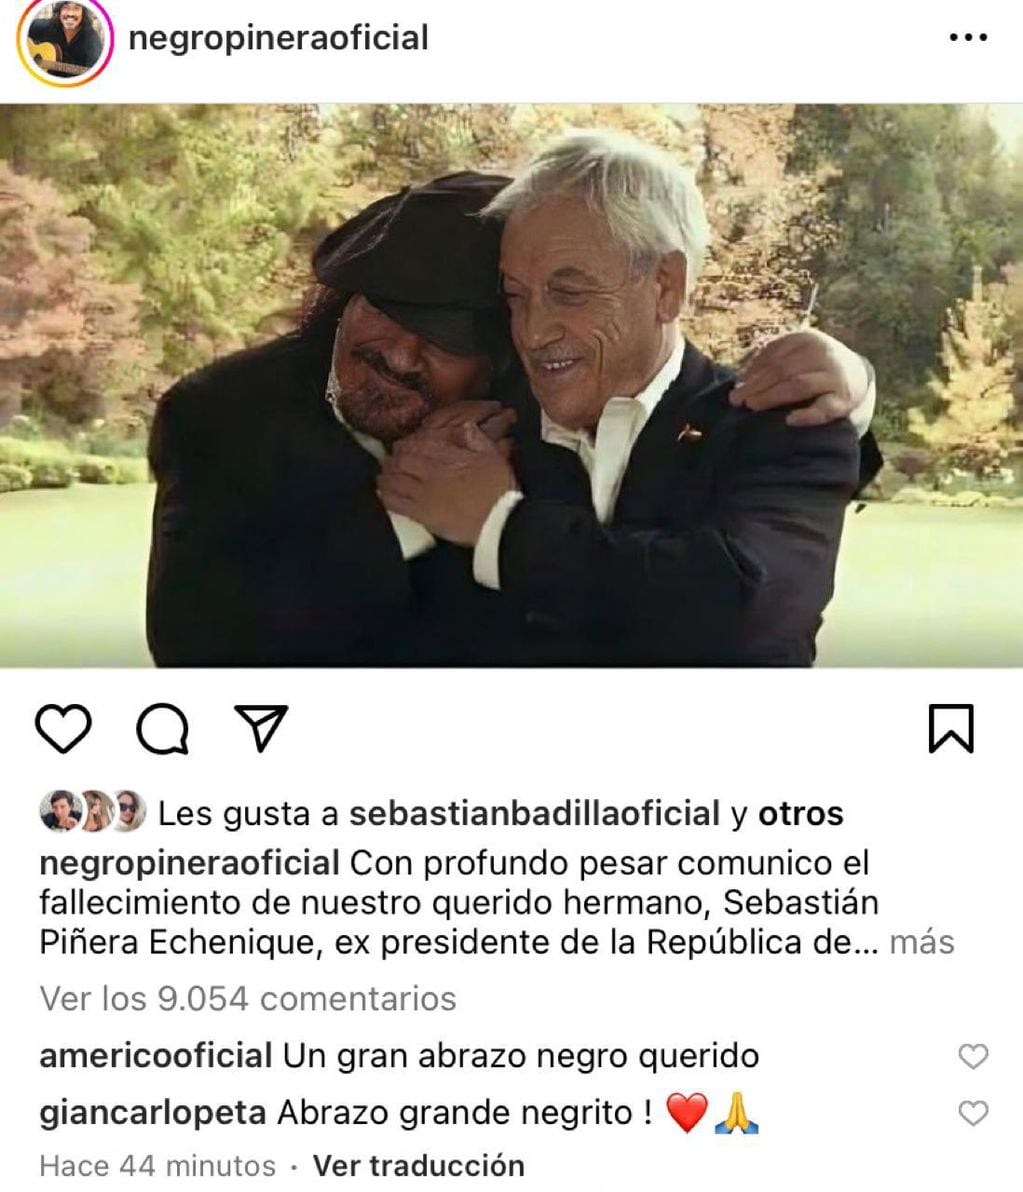 Negro Piñera le dedicó un emotivo mensaje a Sebastián Piñera tras su muerte: “Un líder político excepcional y un tremendo hermano”